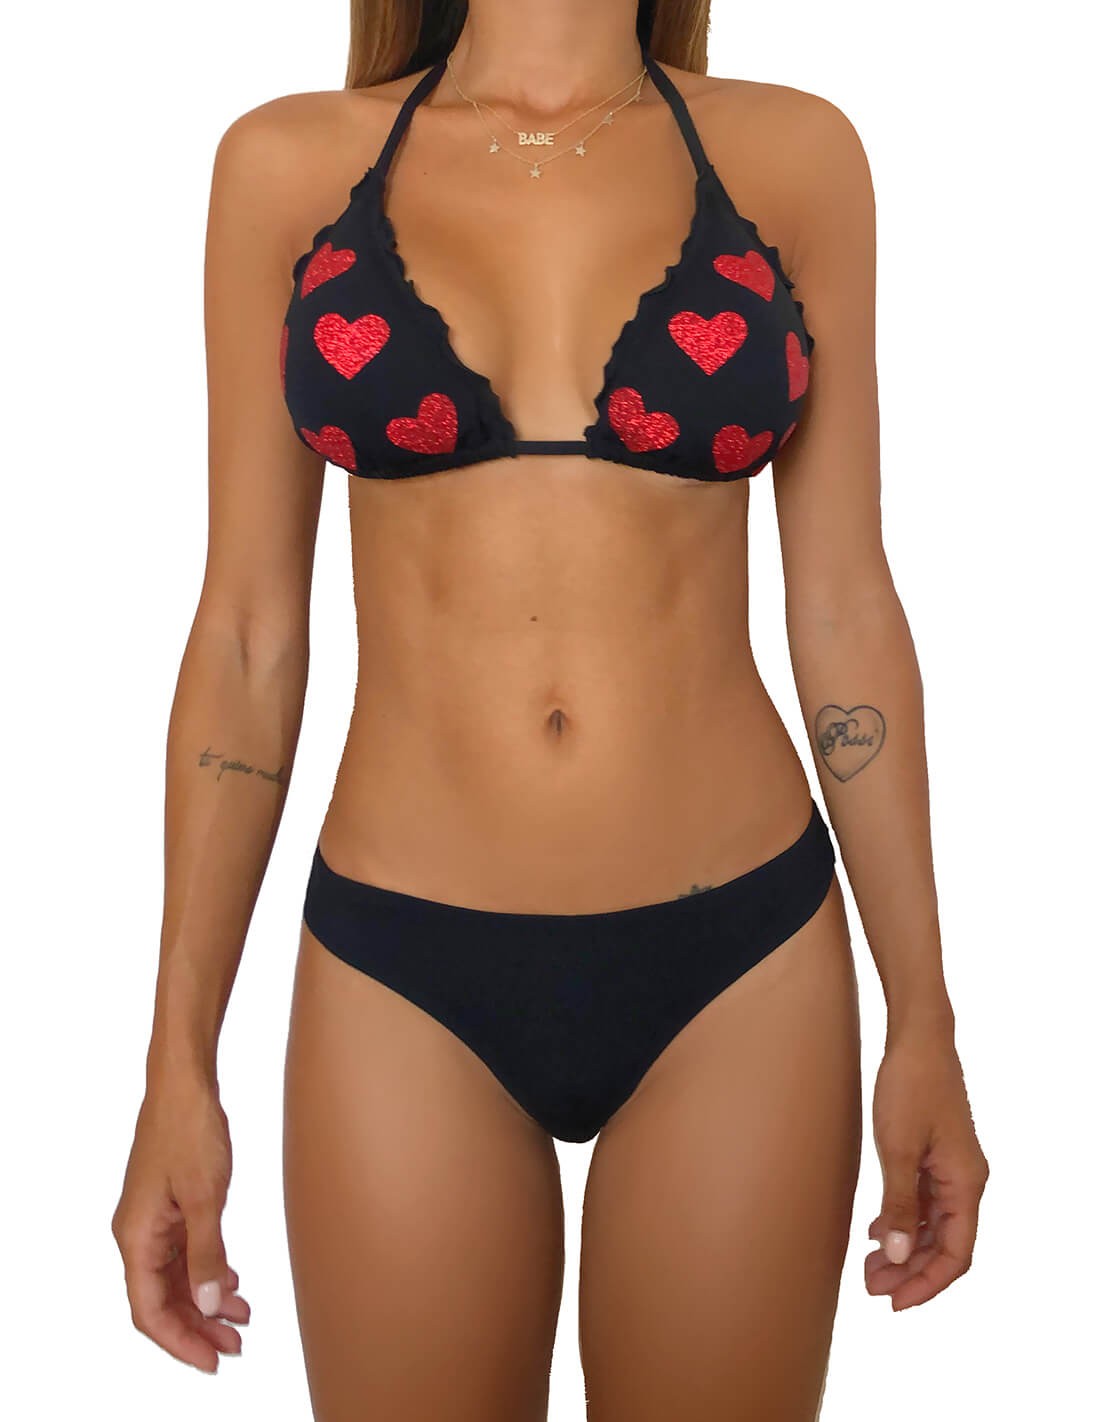 Bikini triangolo con cuori glitter rossi e brasiliana Beatriz | Nero